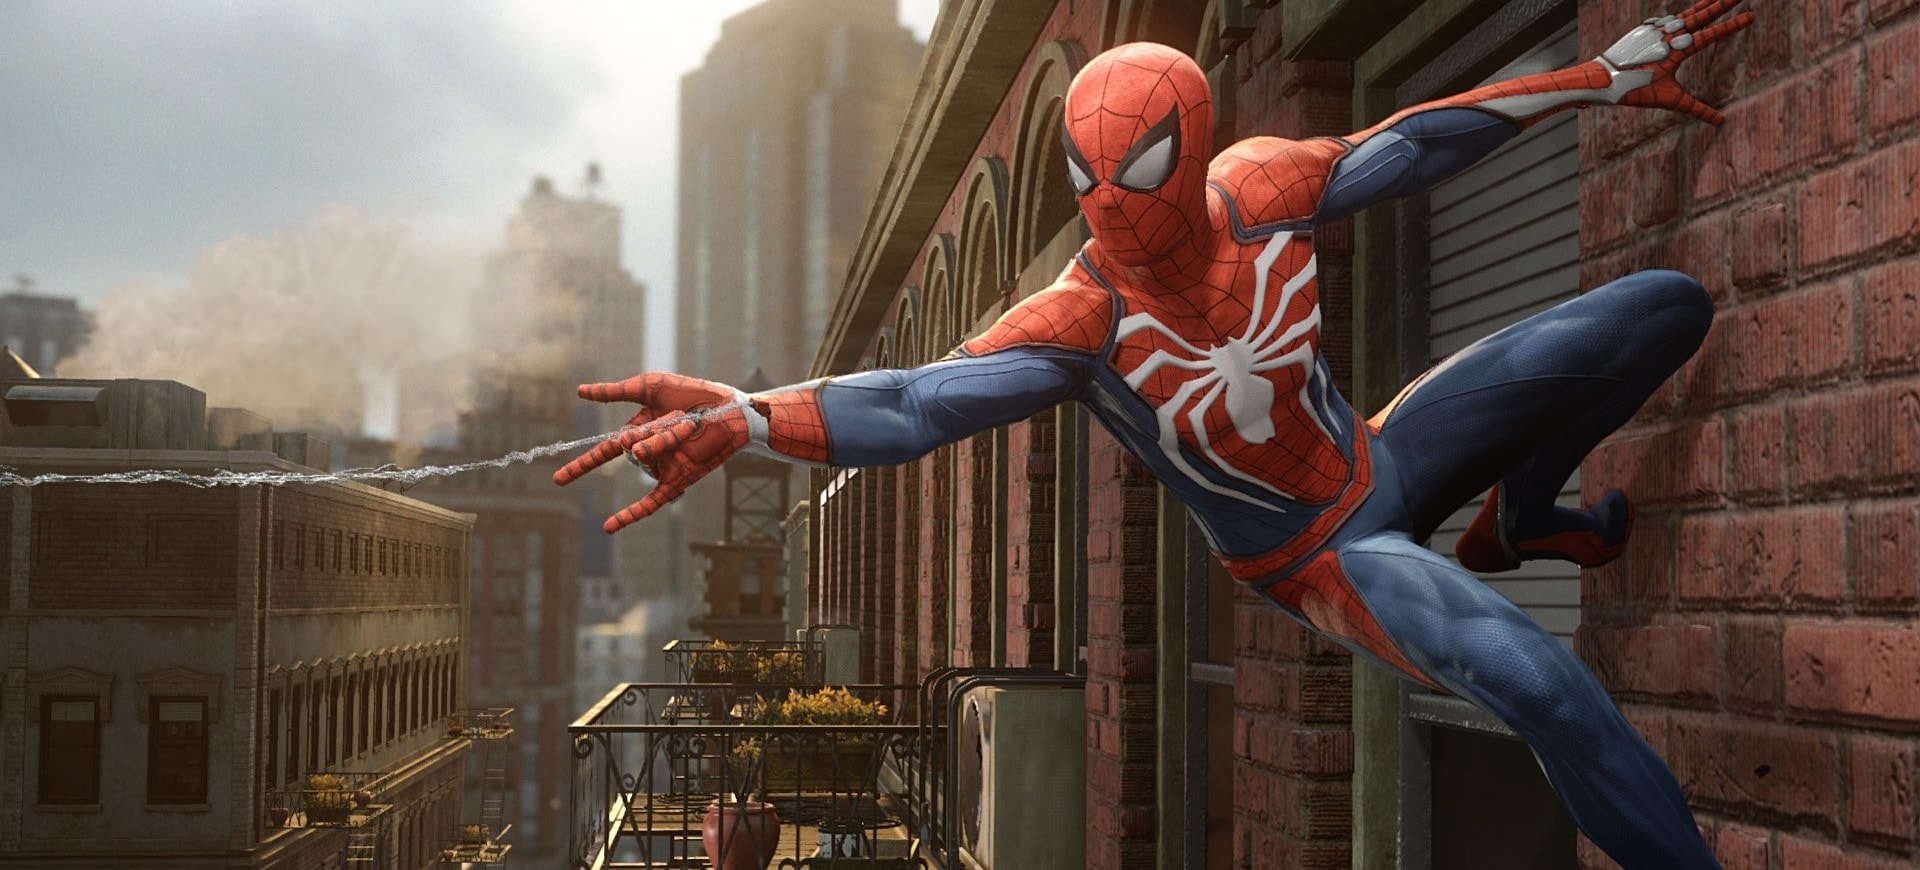 3 điểm nhấn đáng mong đợi từ Marvel's Spider-Man - Giới Thiệu Game